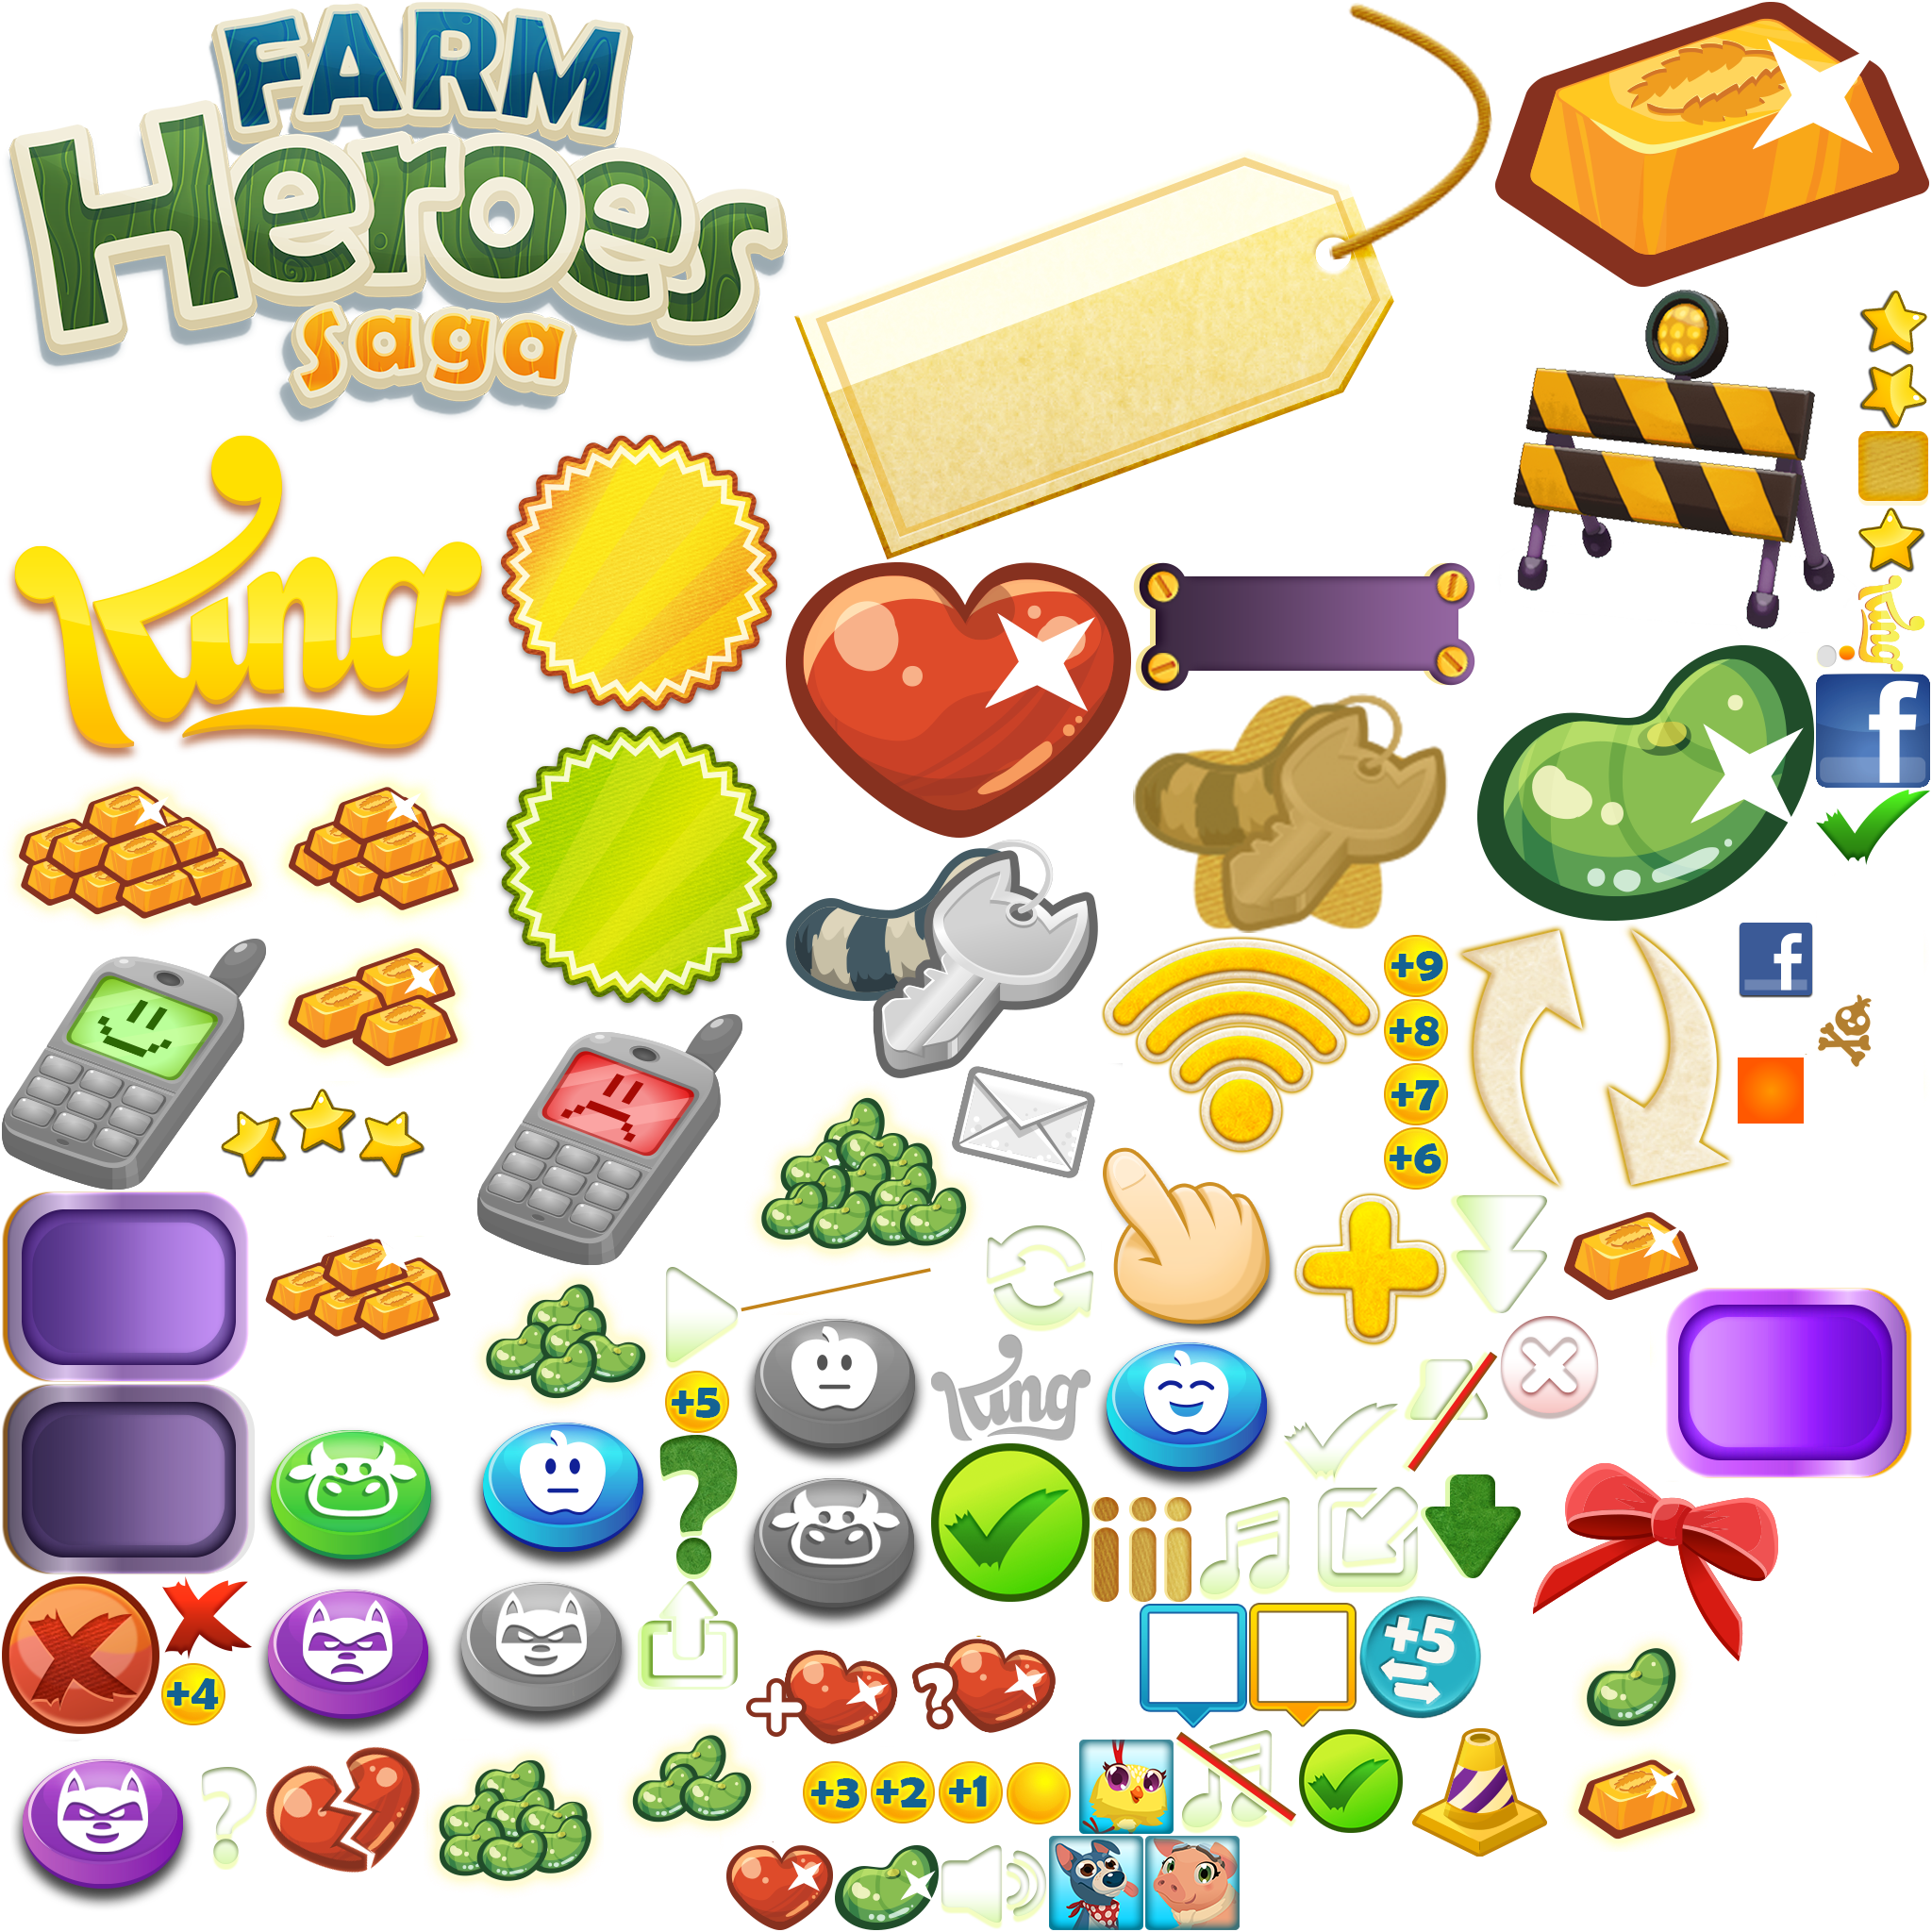 Farm Heroes Saga - Icons